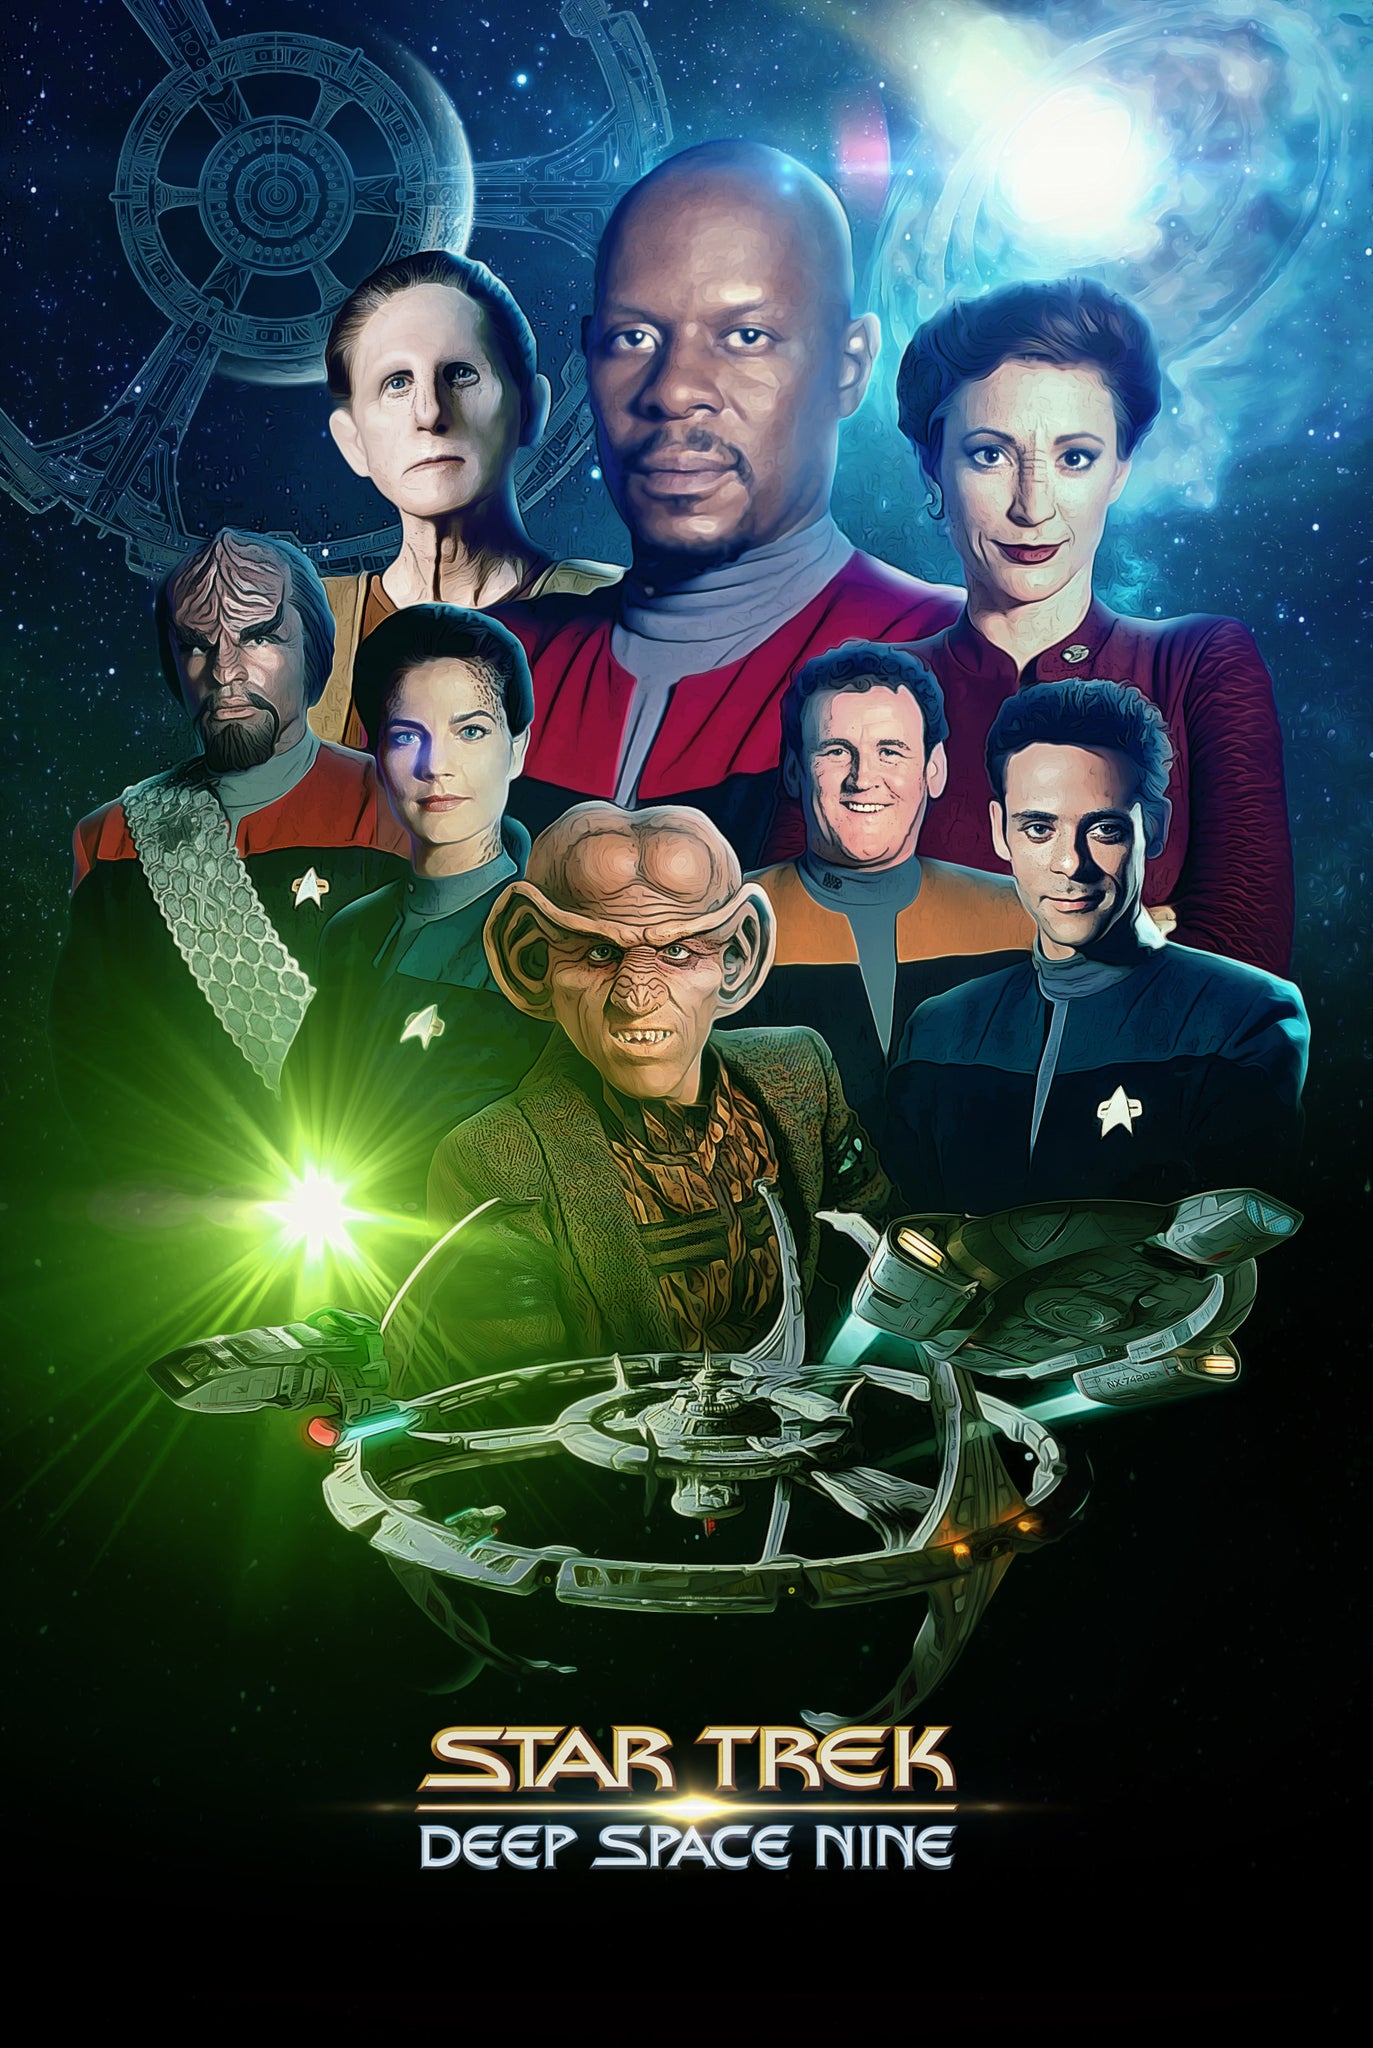 Star Trek: Deep Space Nine Complete Series 1993 Dvd